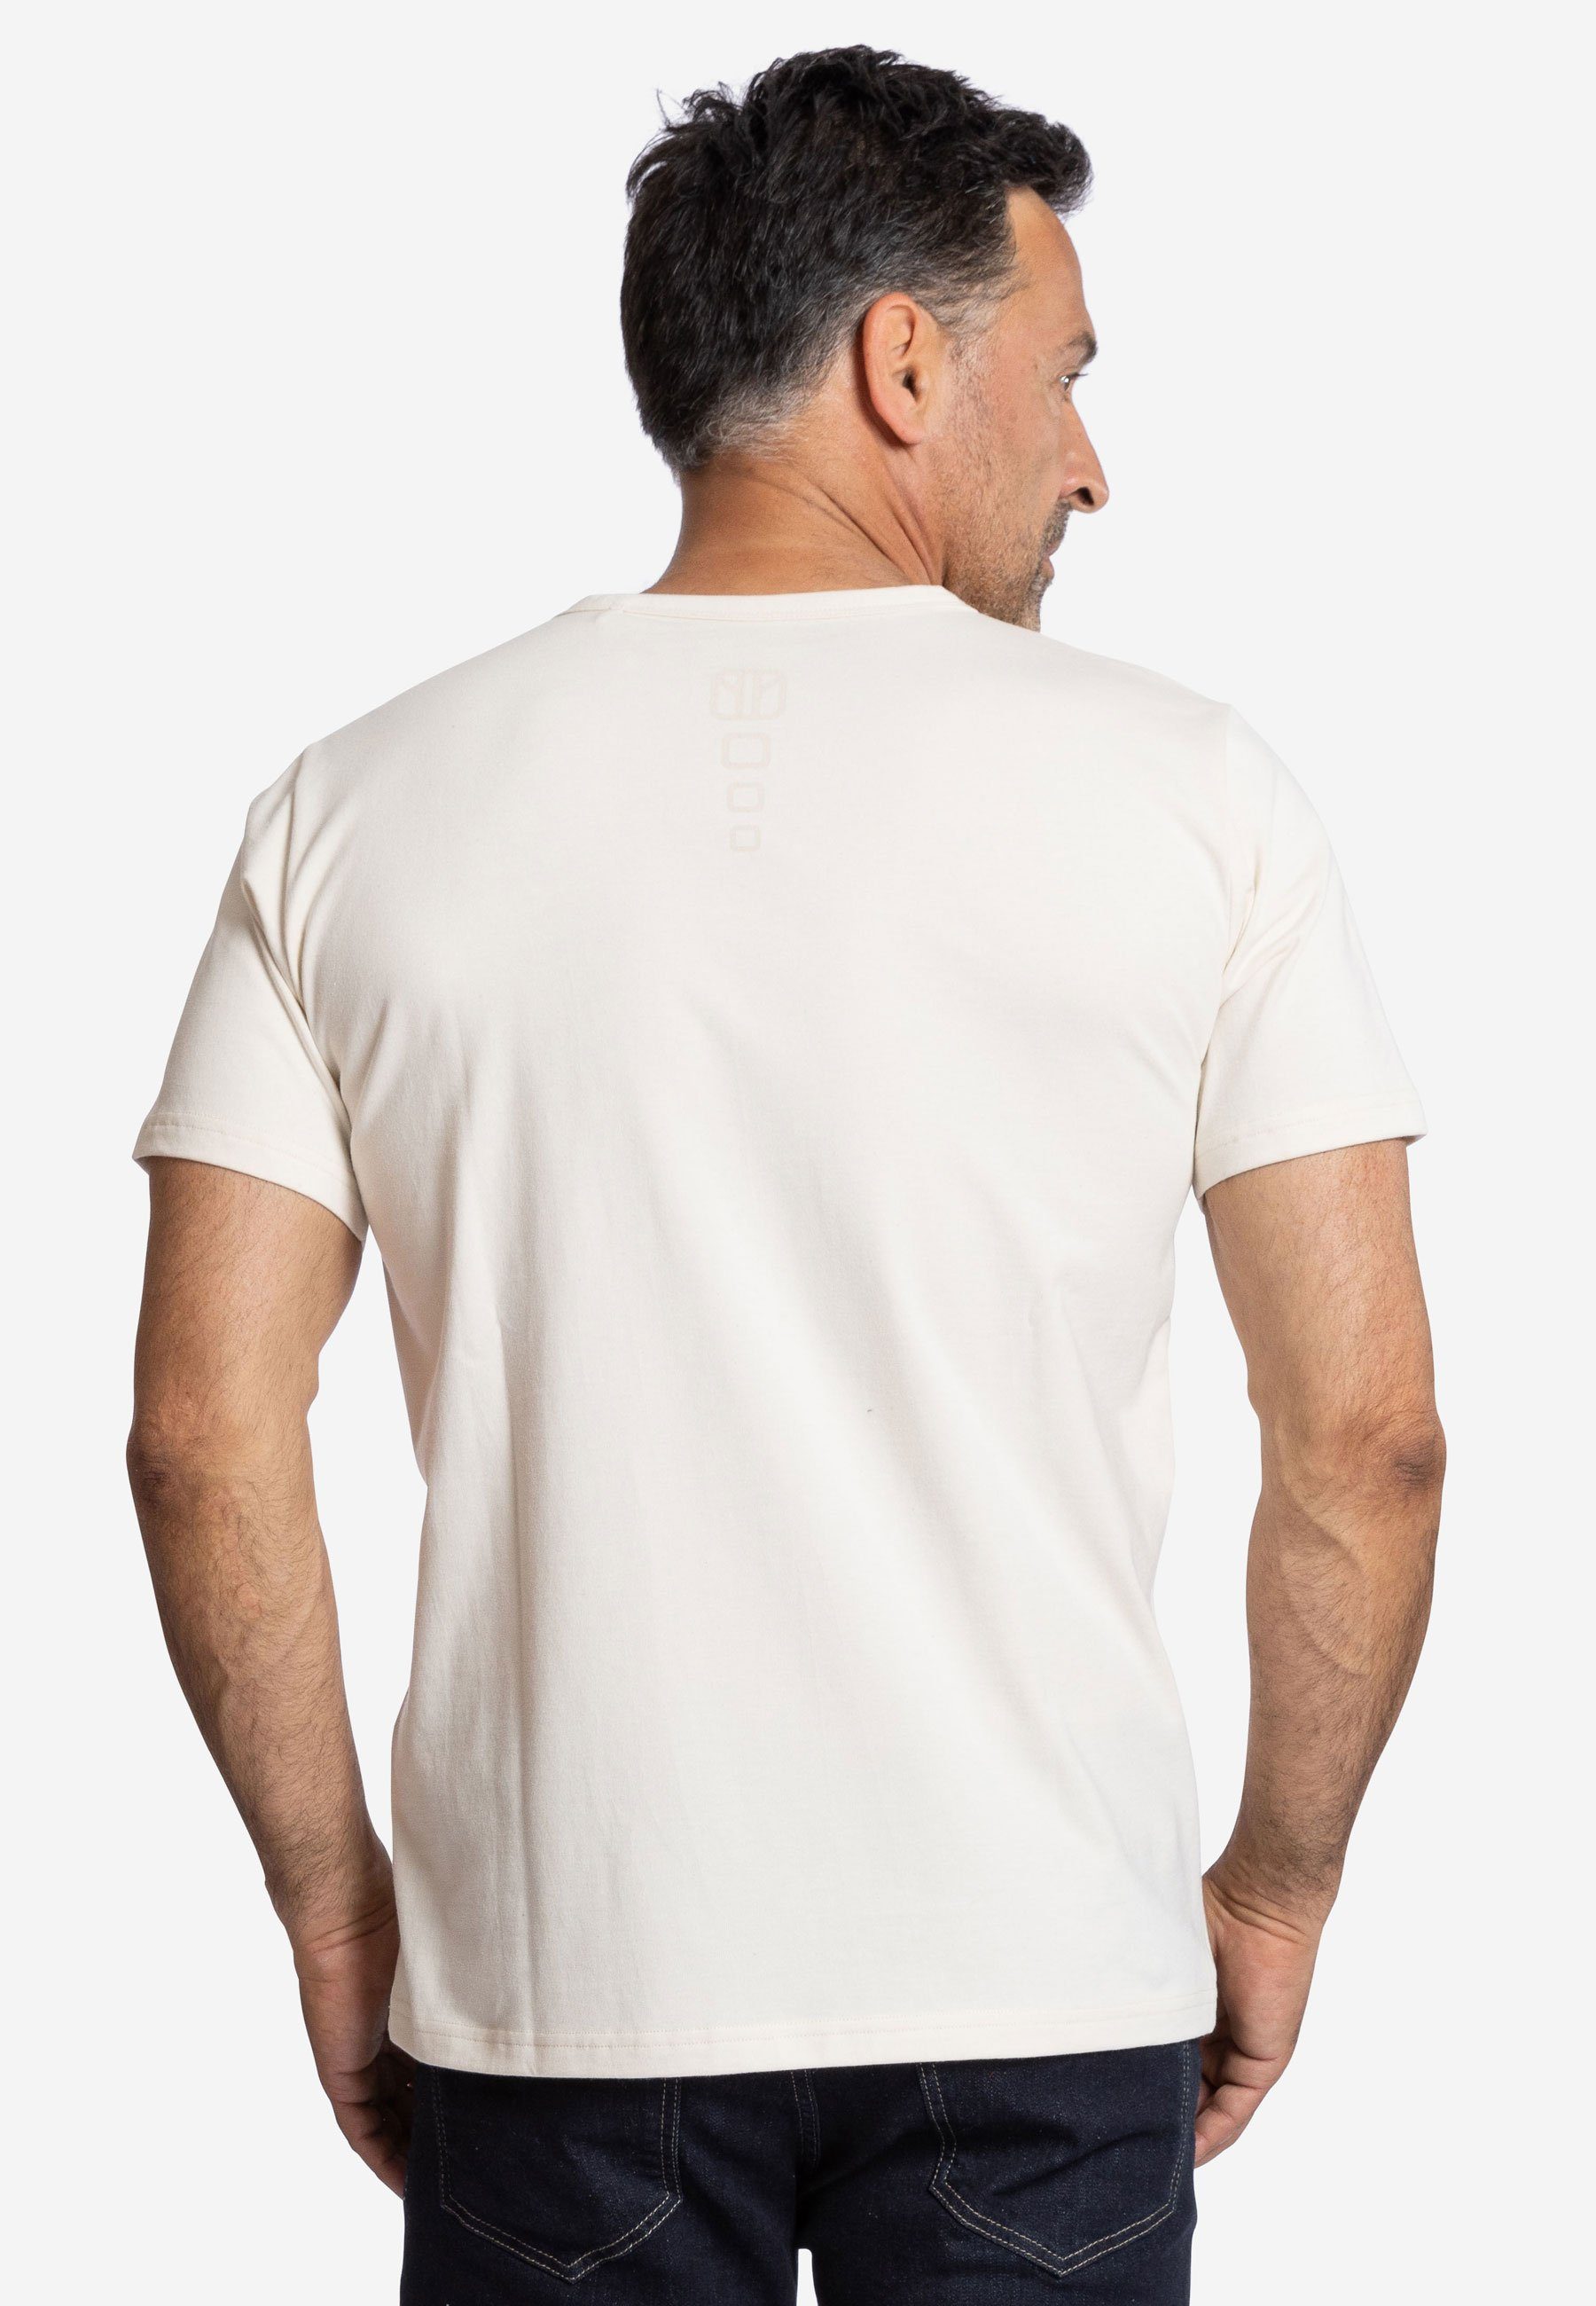 Elkline T-Shirt Natürlich biologisch abbaubar